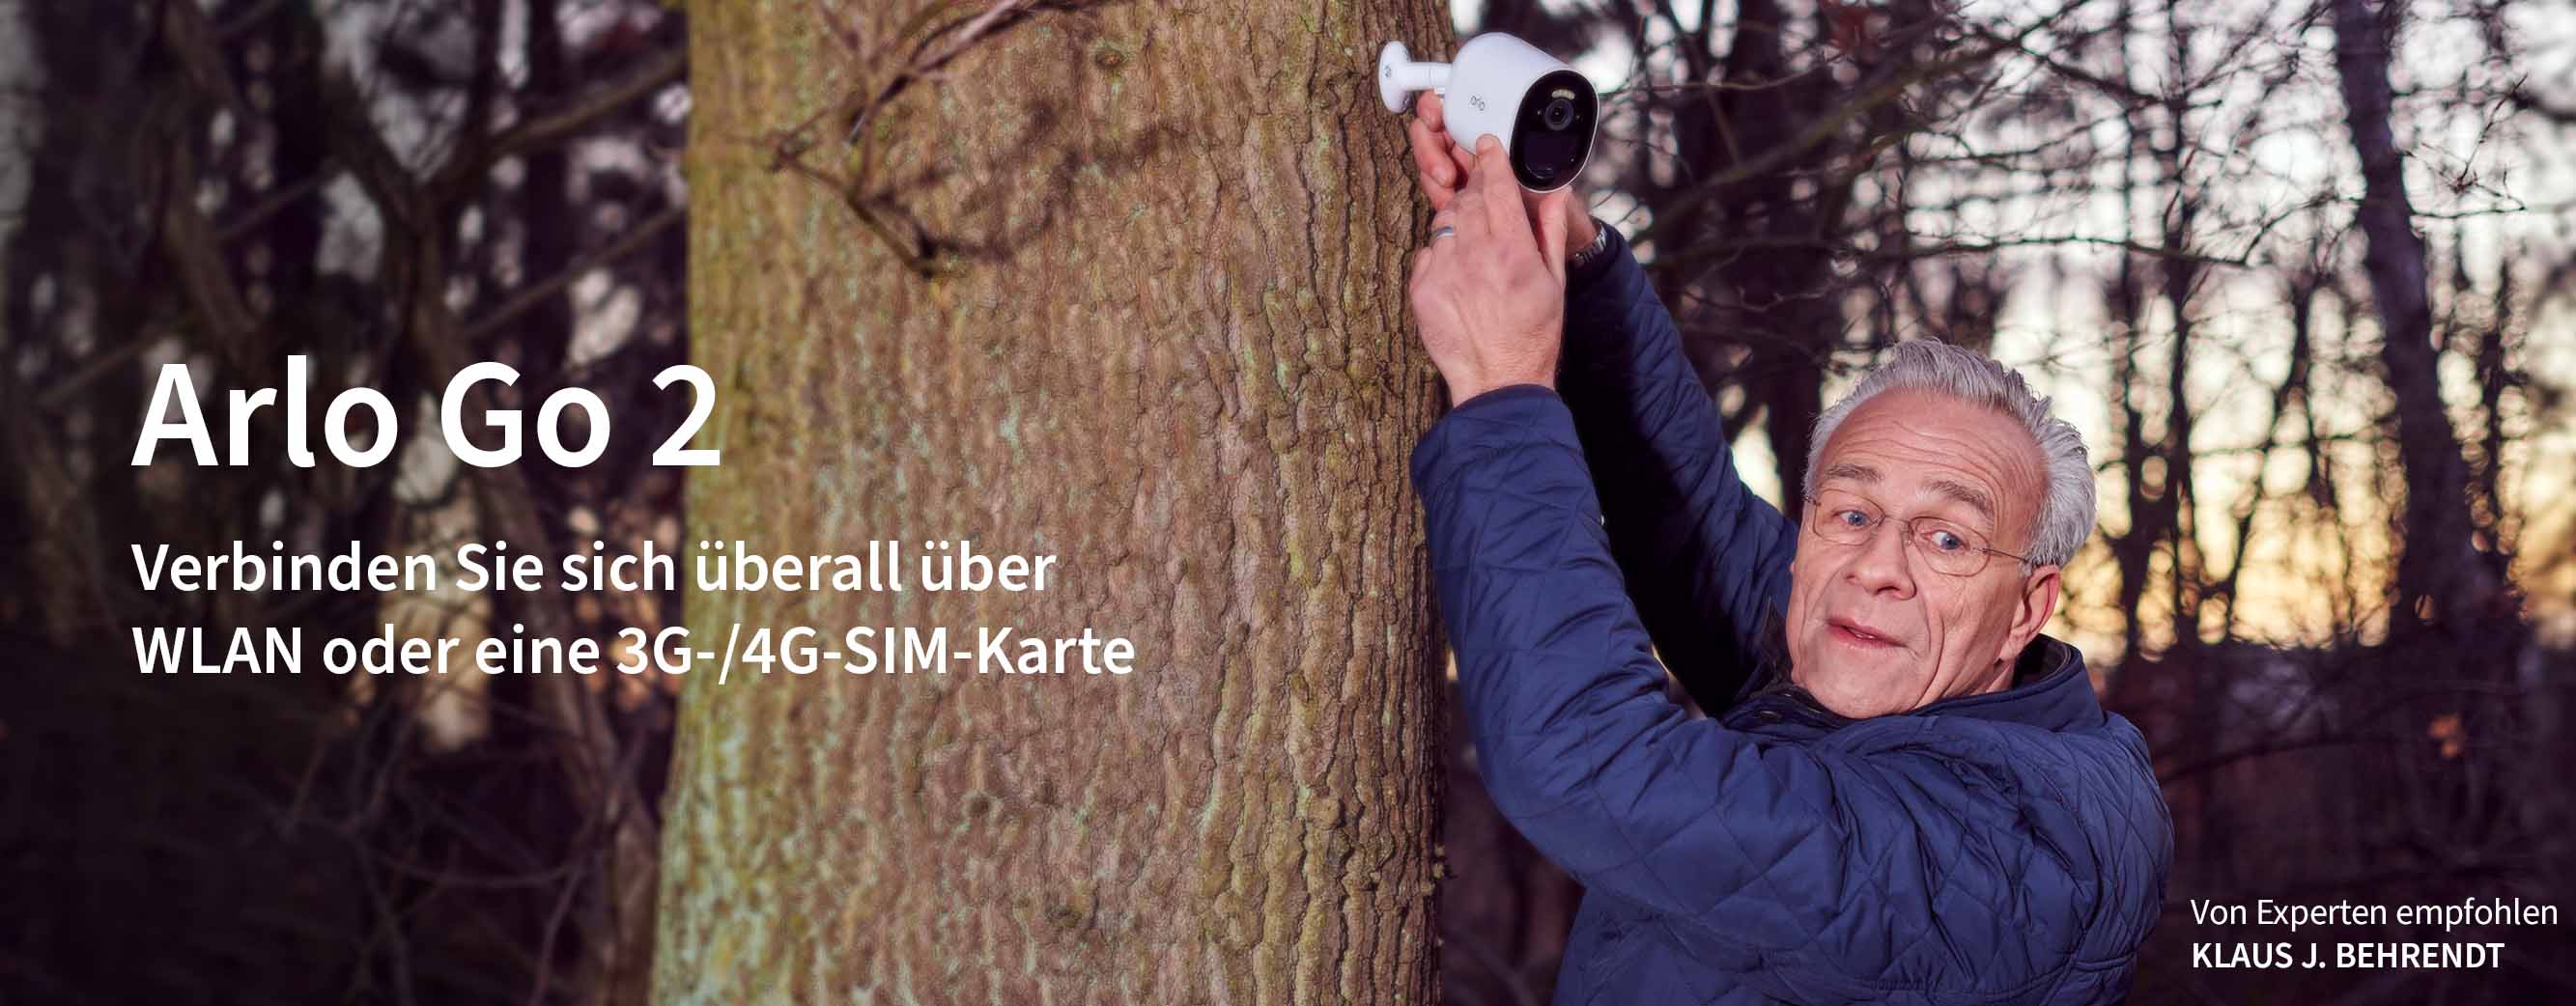 Klaus J. Behrendt, Schauspieler und TV-Kommissar, installiert die neue Sicherheitskamera Arlo Go 2 an einem Baum in seinem Garten